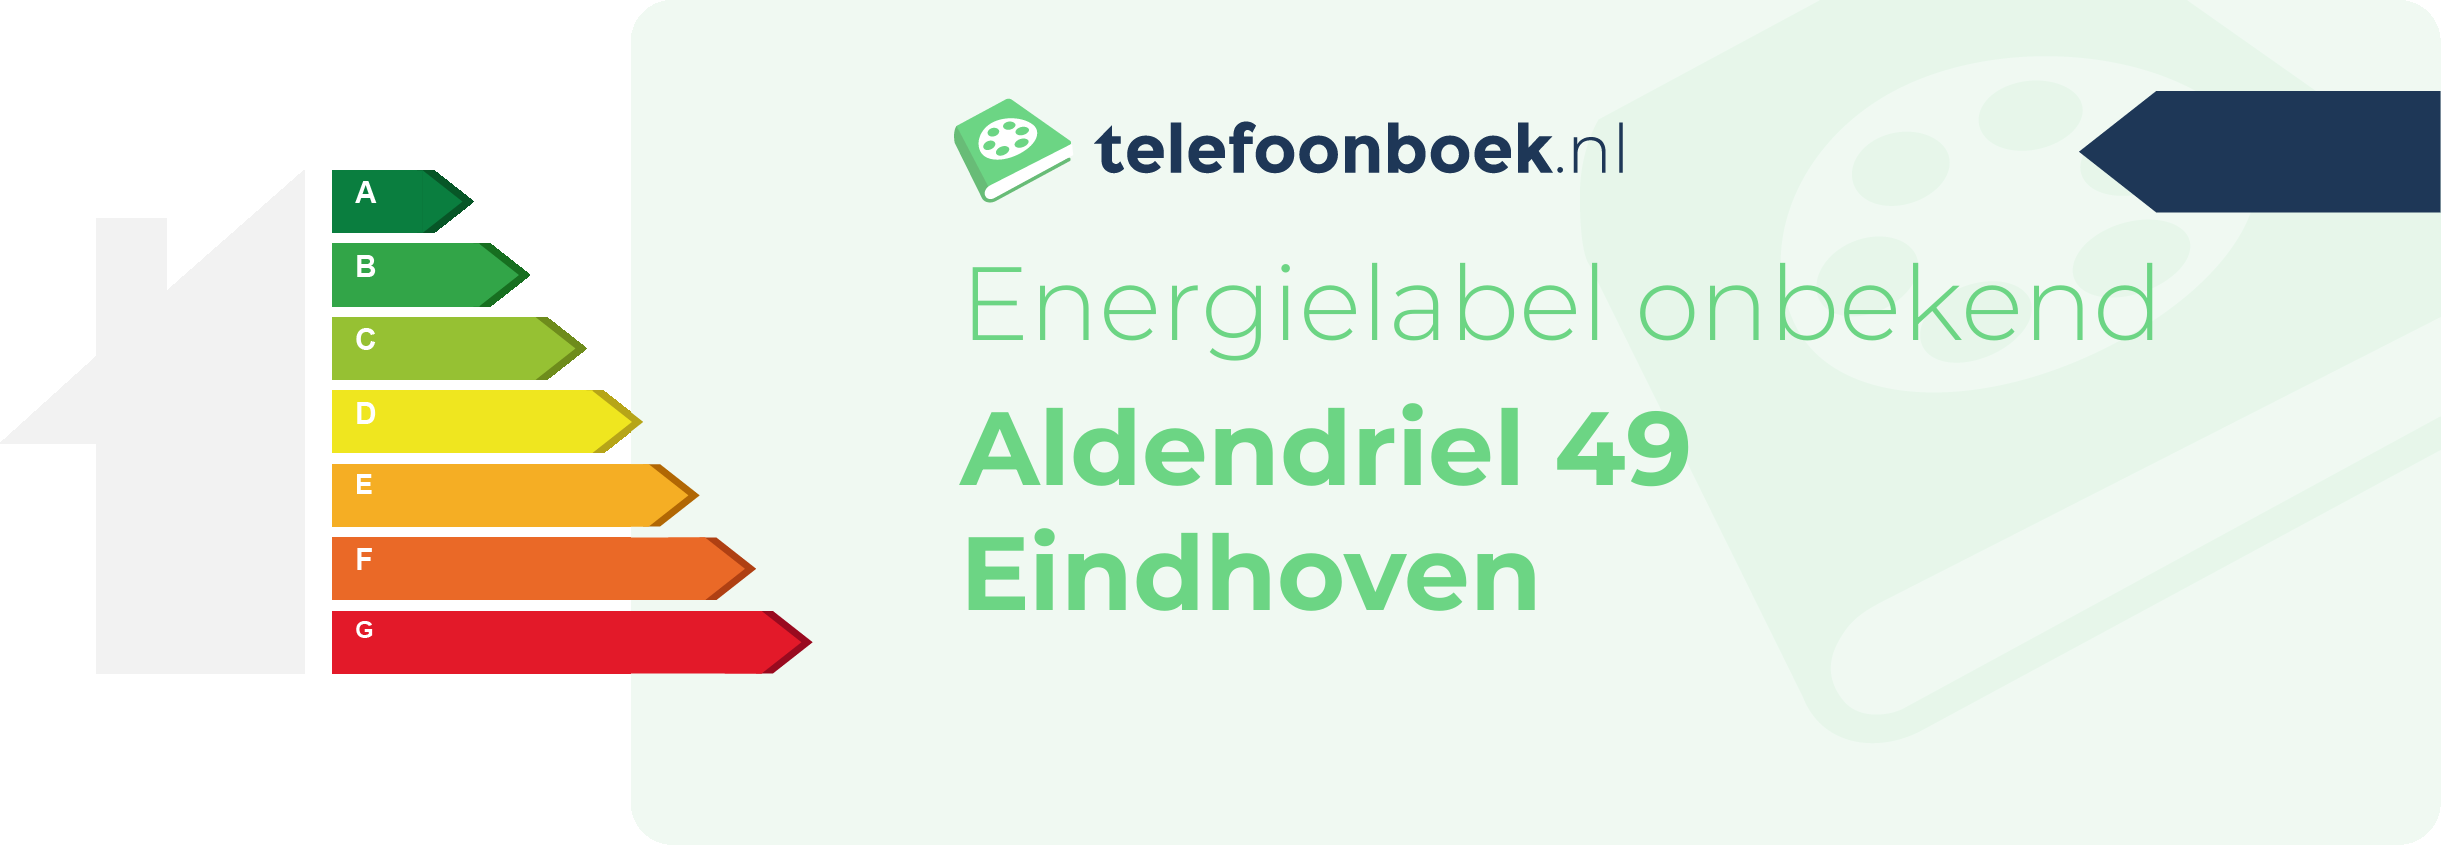 Energielabel Aldendriel 49 Eindhoven